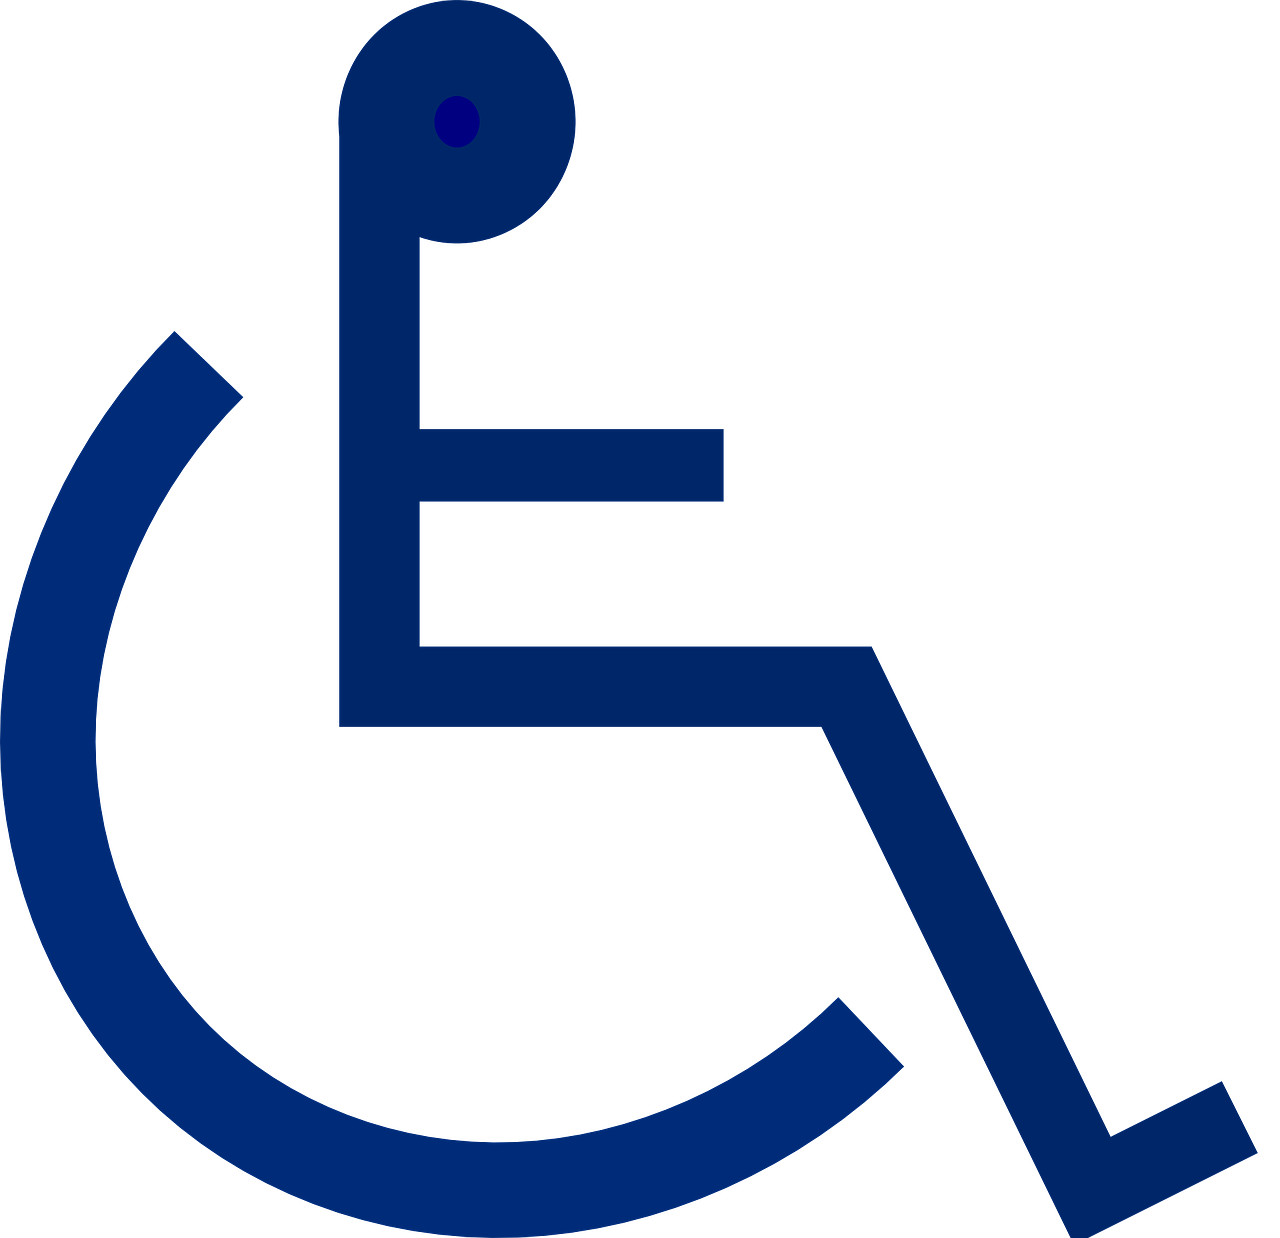 Claudia Verdult kosten instellingen gehandicaptenzorg verstandelijk gehandicapten